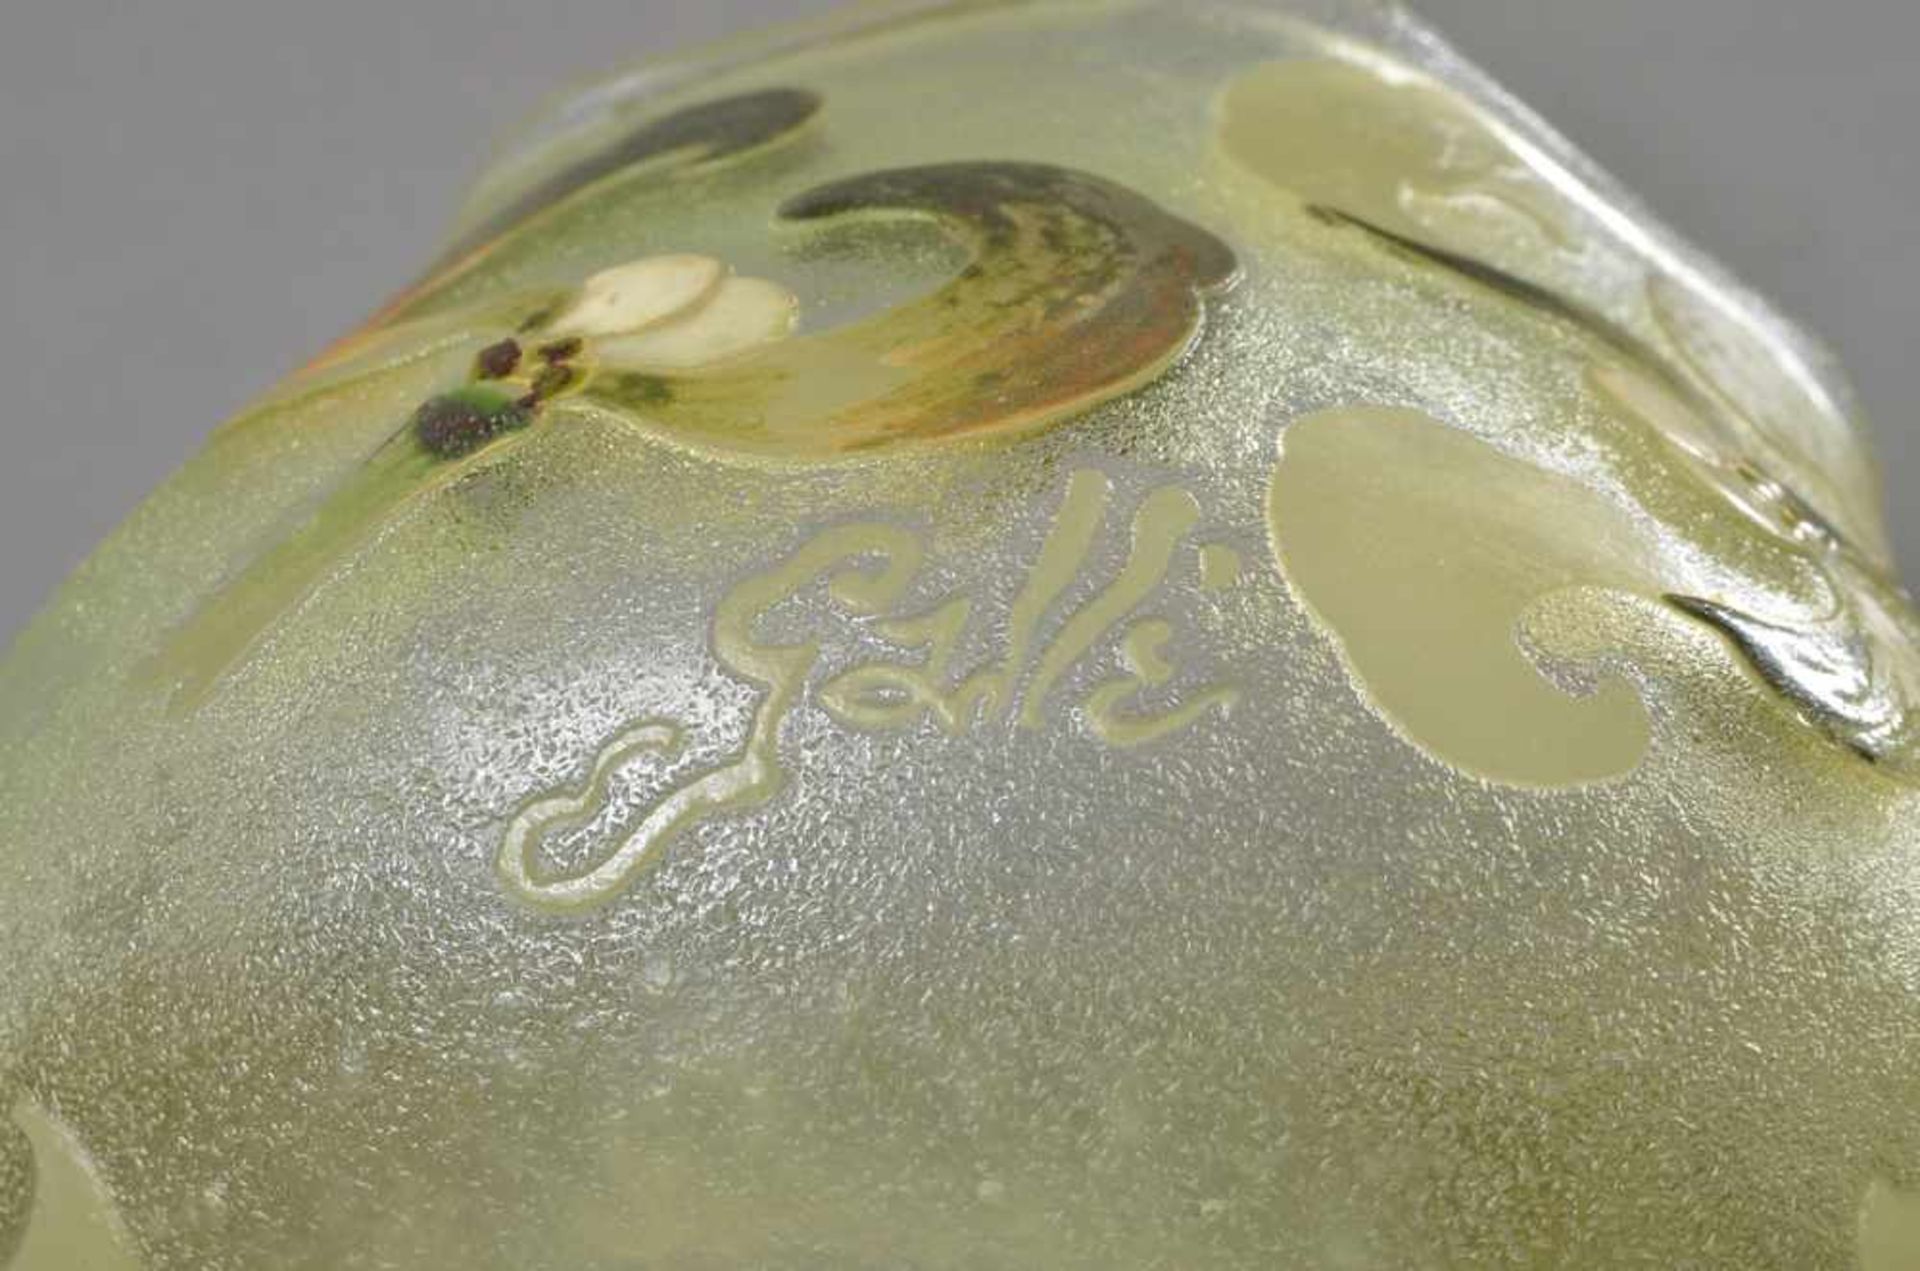 Kleine Gallé Vase "Mistelzweig" Dekor, farbig bemalt/ausgeätzt, sign., H. 11cm, etw. ber. - Bild 3 aus 3